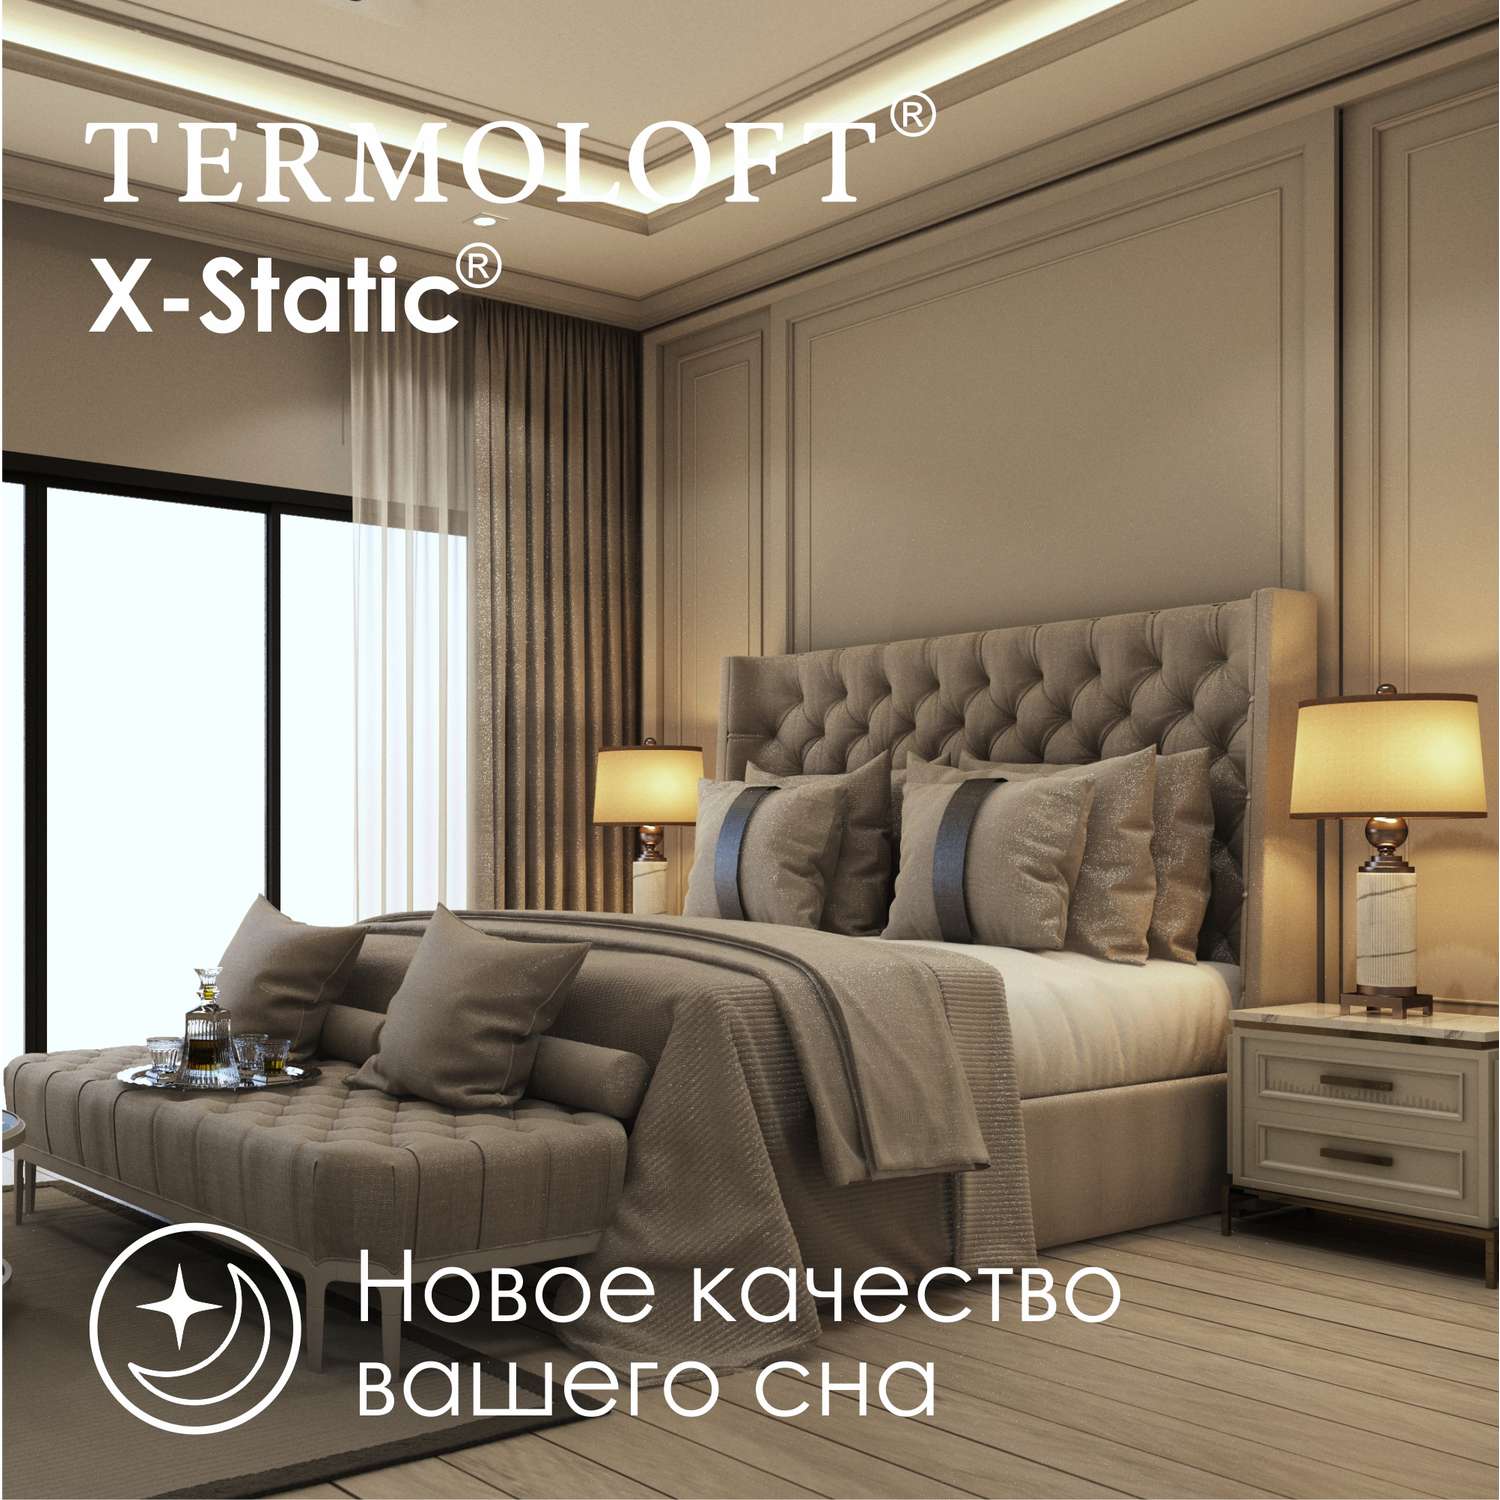 Наматрасник Termoloft X-Static с волокнами серебра 180х200 - фото 4